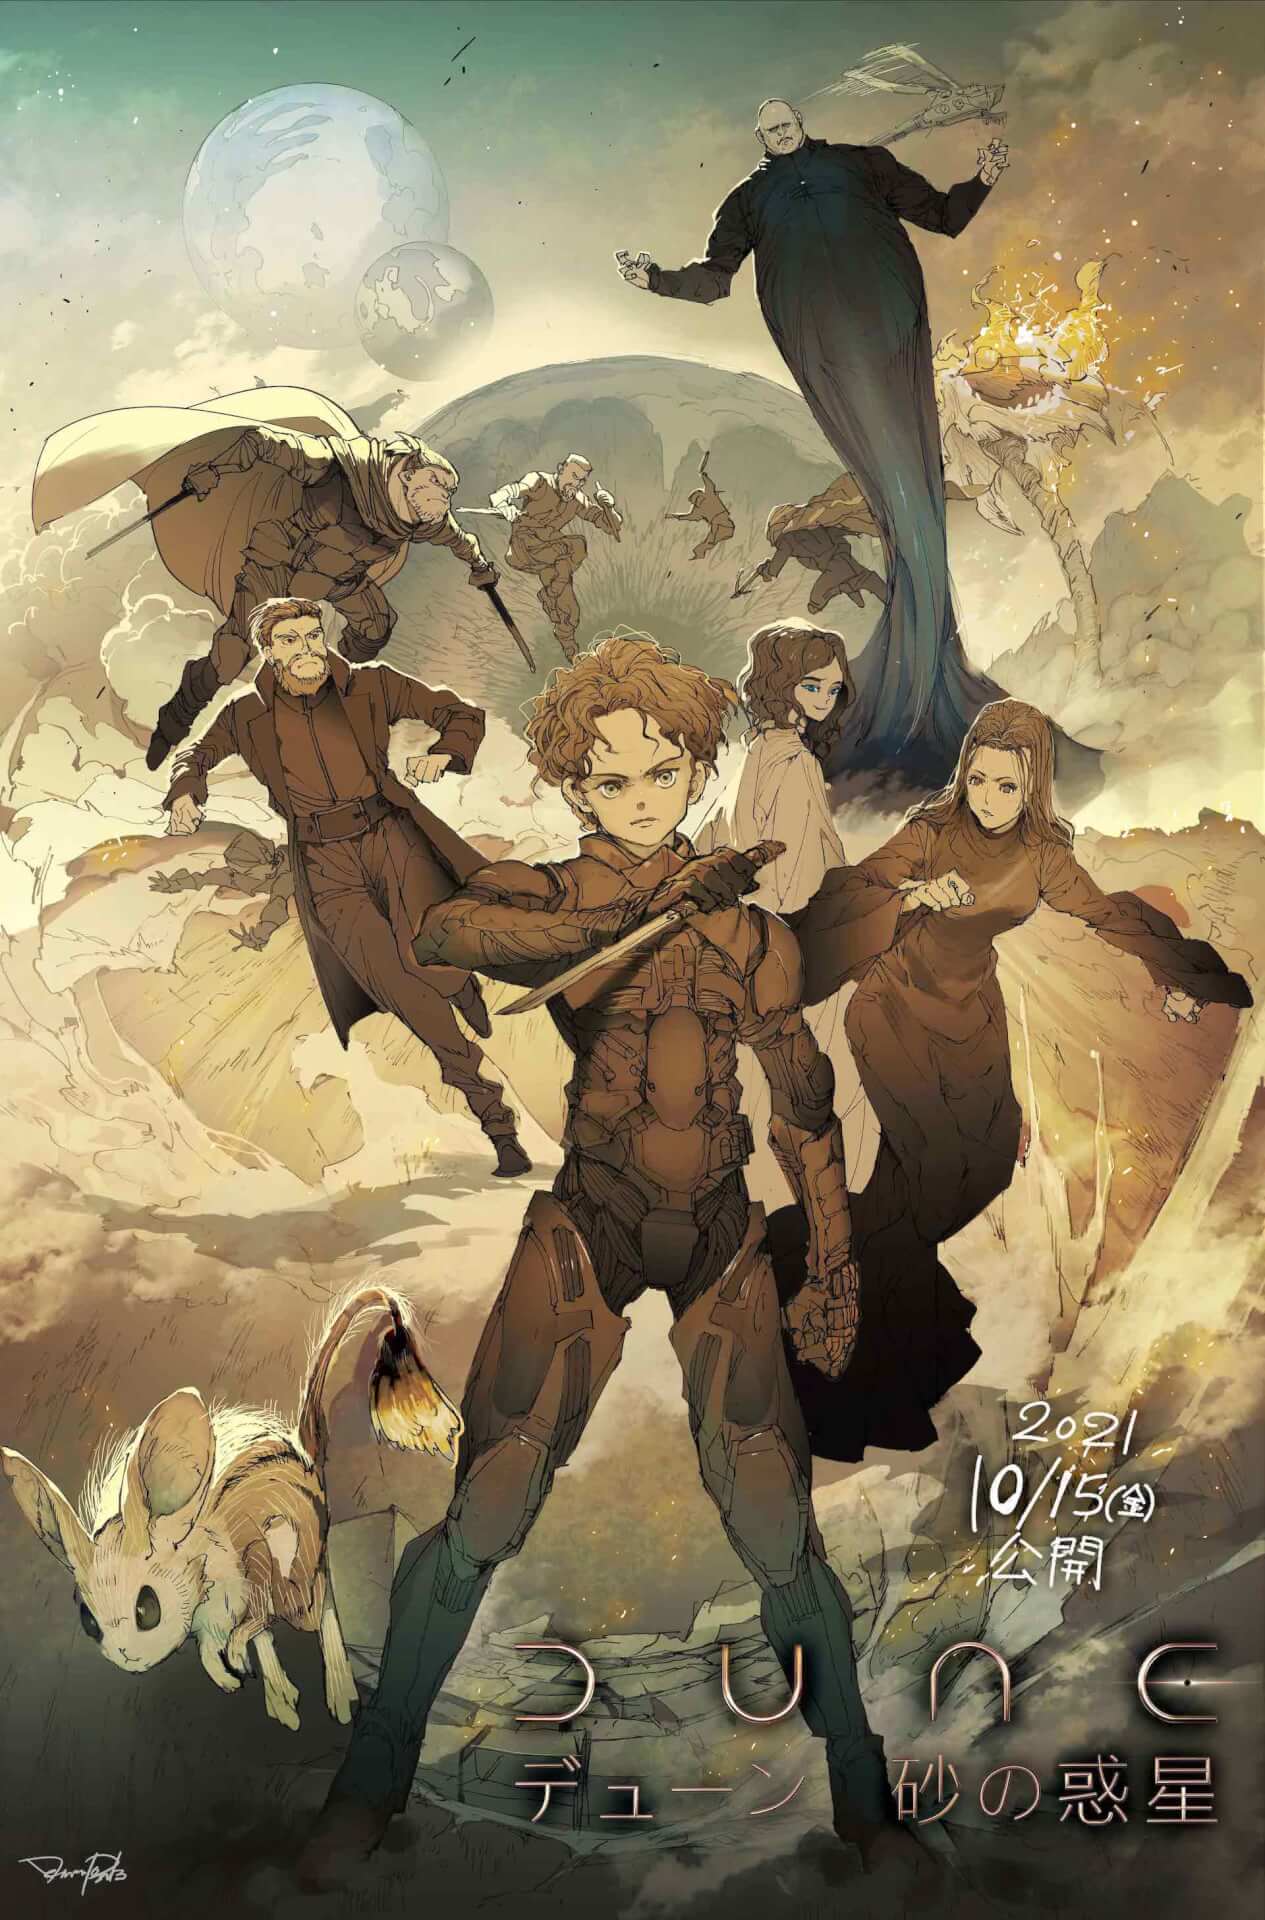 THE PROMISED NEVERLAND Manga Illustrator Draws Dune Poster for Japanese Release thumbnail